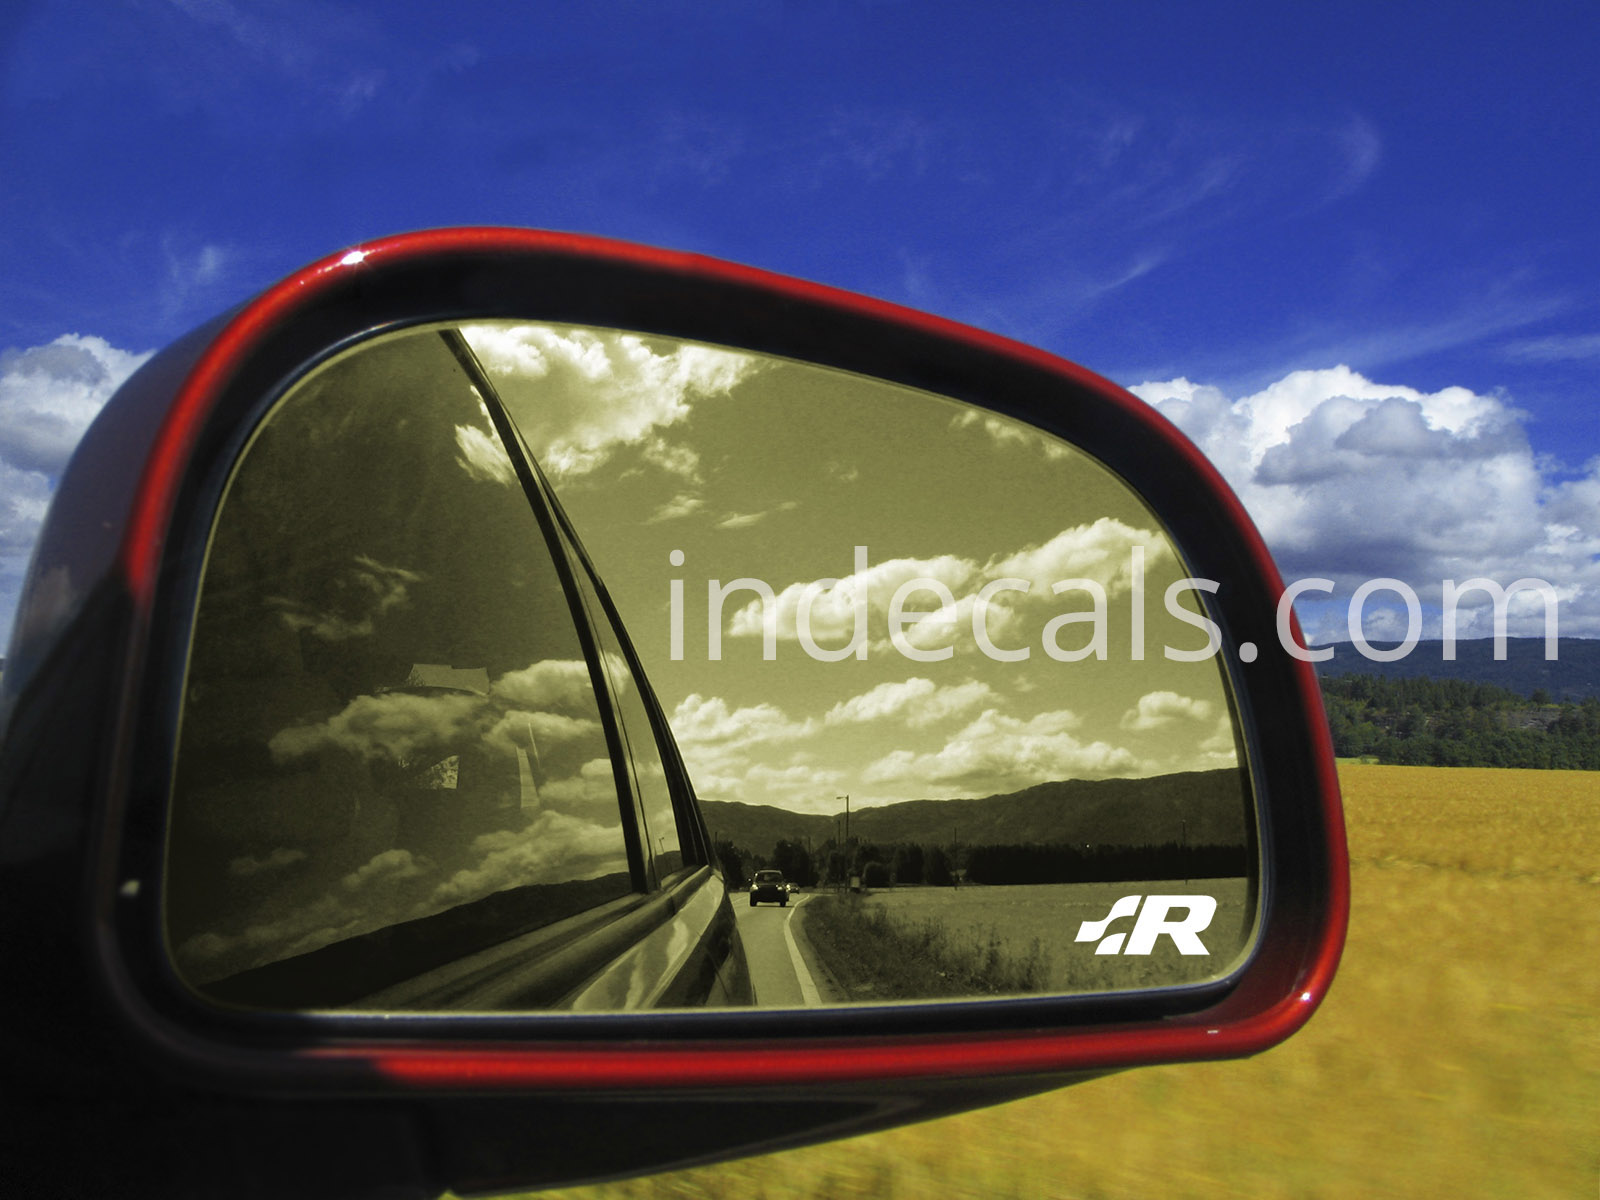 2 x Volkswagen Racing stickers for Mirror